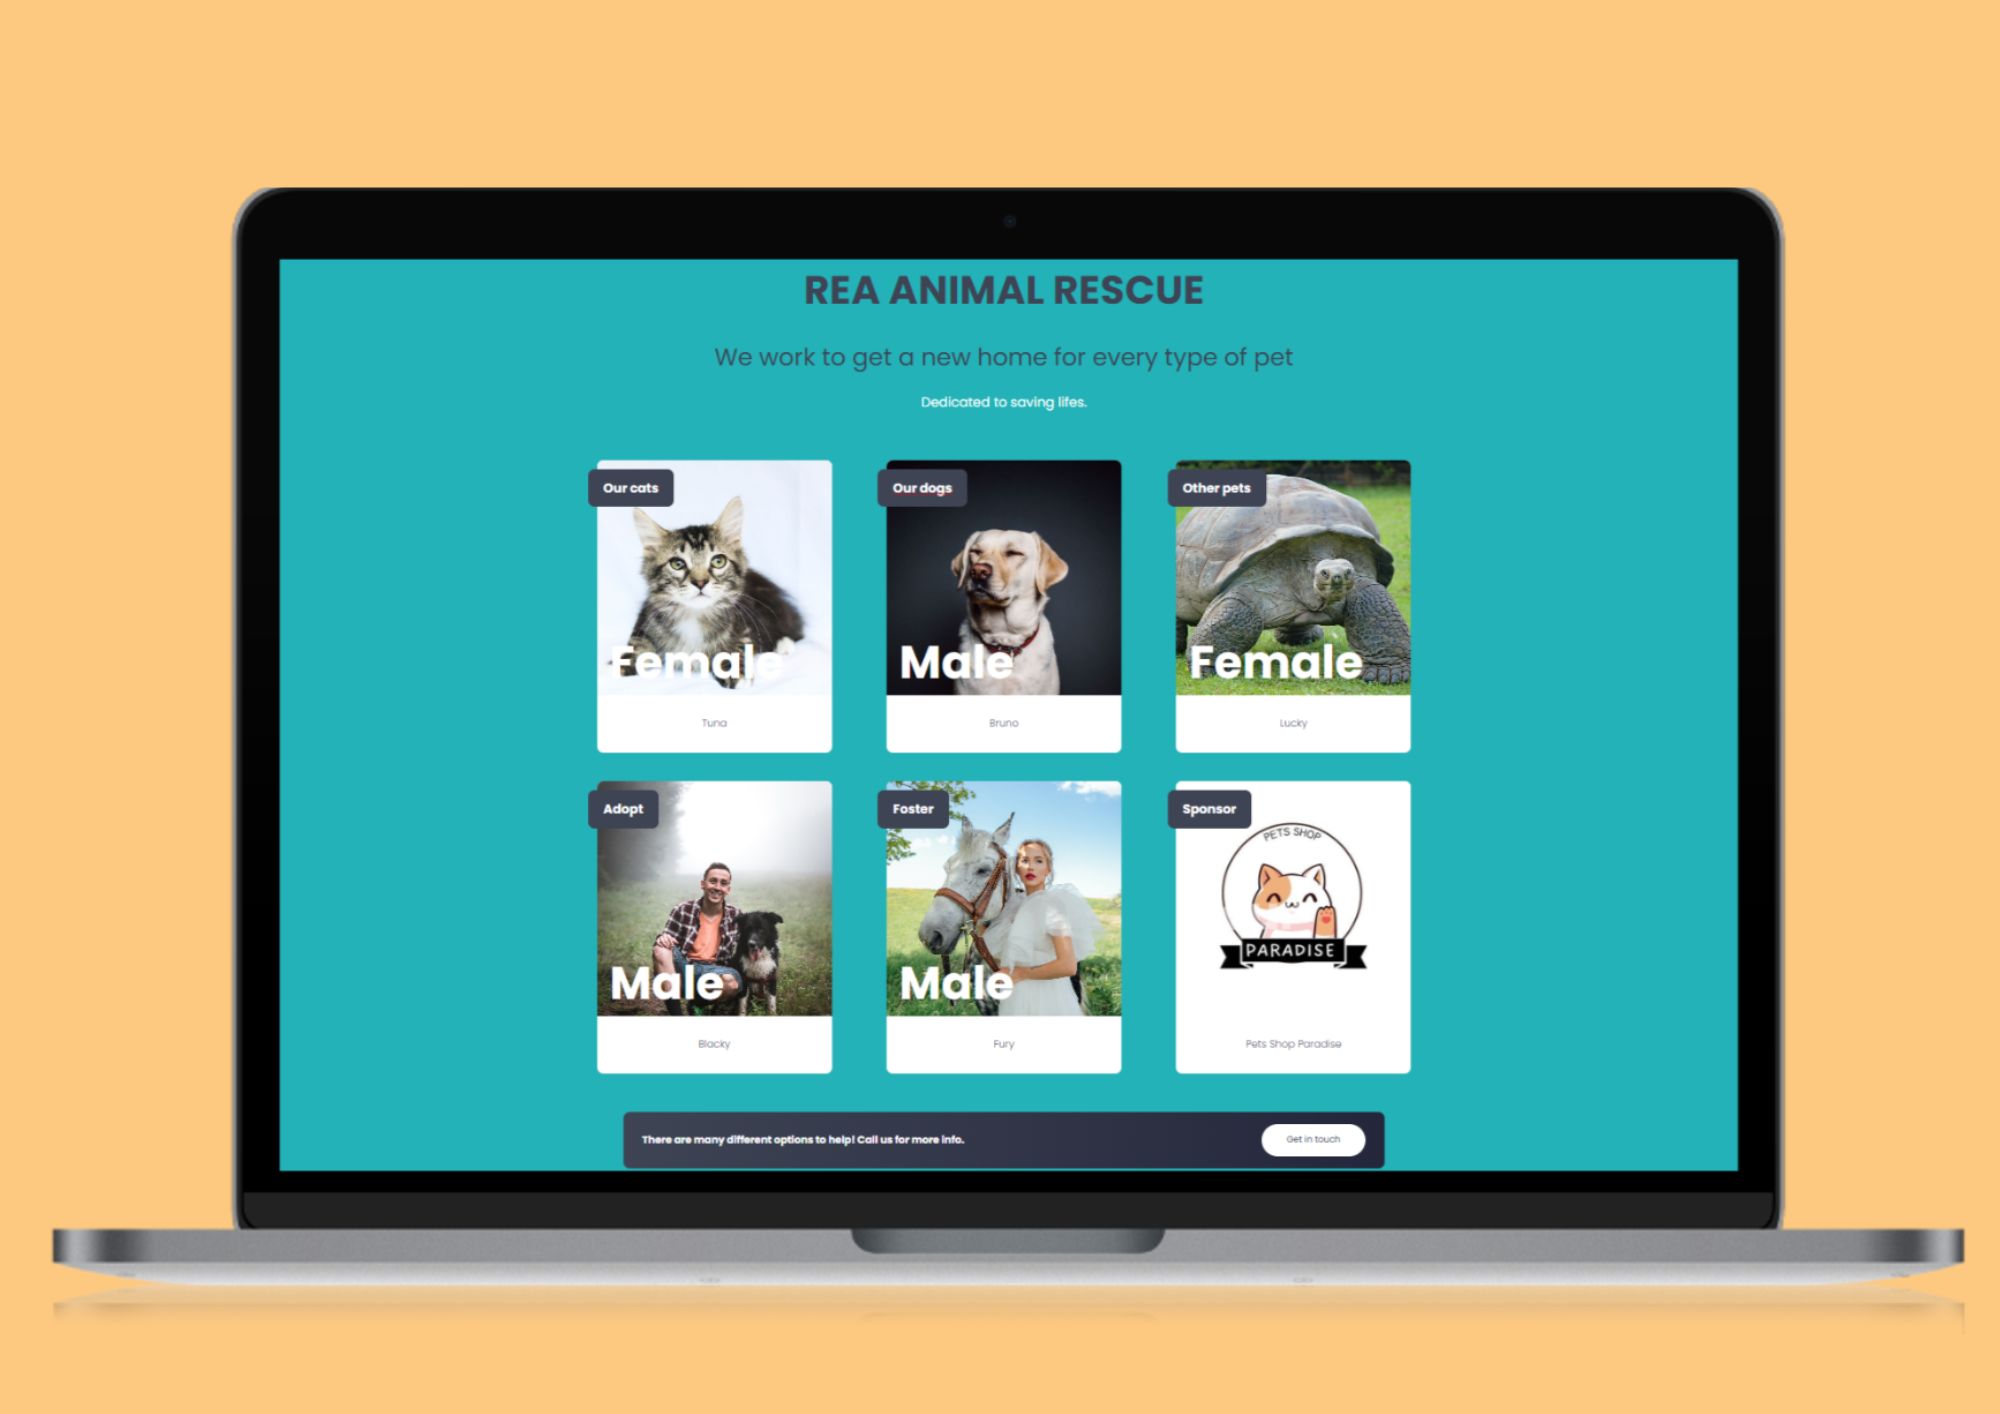 En la imagen puedes ver una página web dedicada a buscar un hogar a animales domésticos